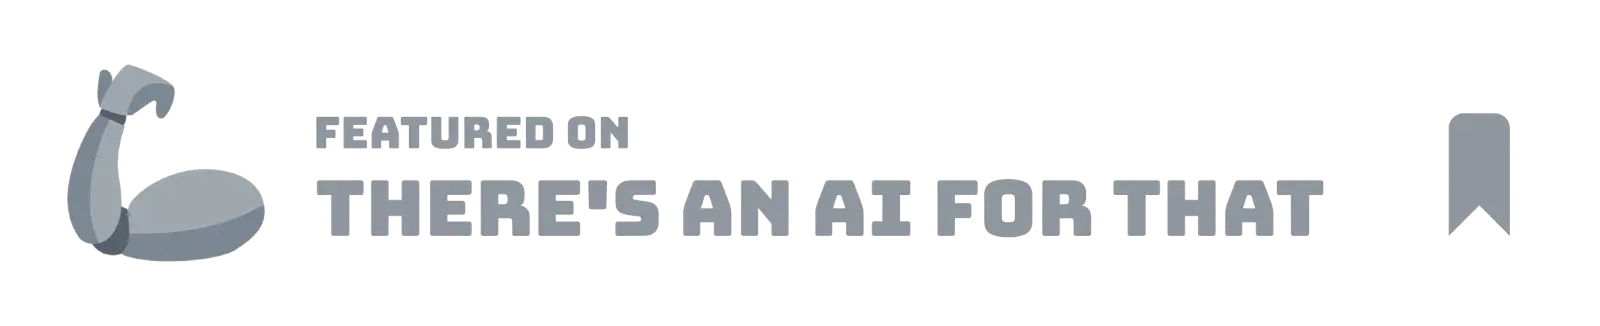 theresanaiforthat logo